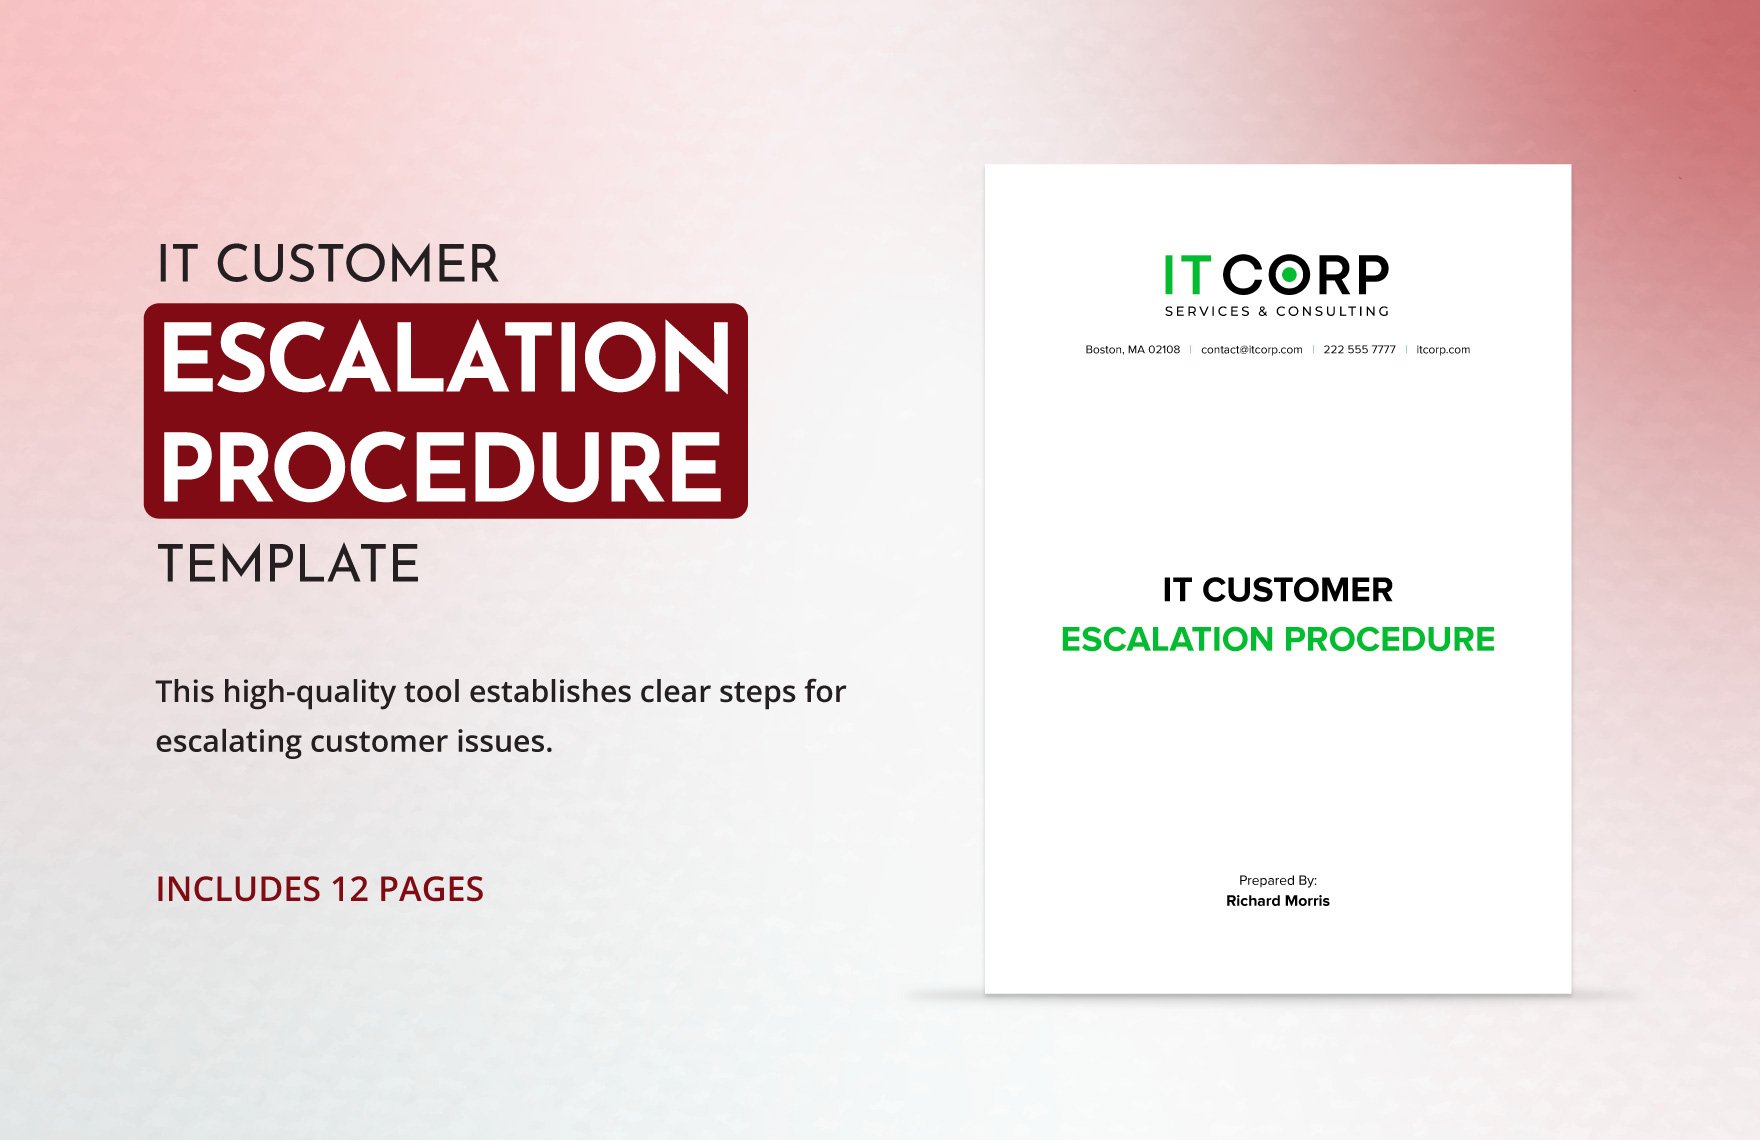 IT Customer Escalation Procedure Template